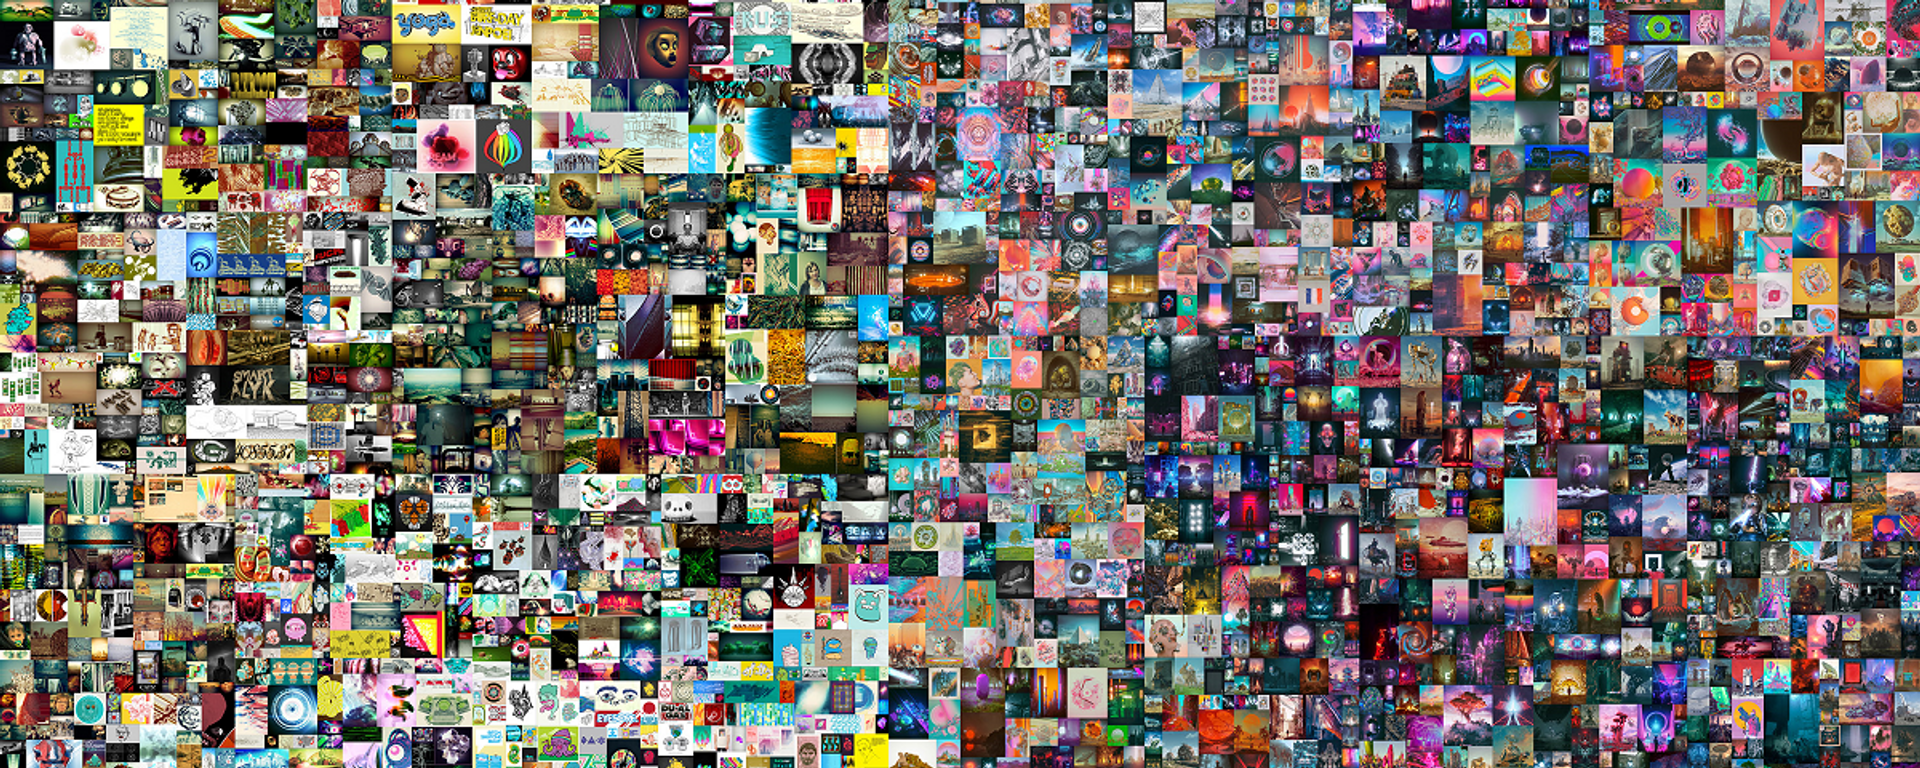 El 'collage' del artista digital estadounidense 'Beeple', titulado 'Everydays: The First 5000 Days' ('Todos los días: los primeros 5.000 días')  - Sputnik Mundo, 1920, 12.03.2021